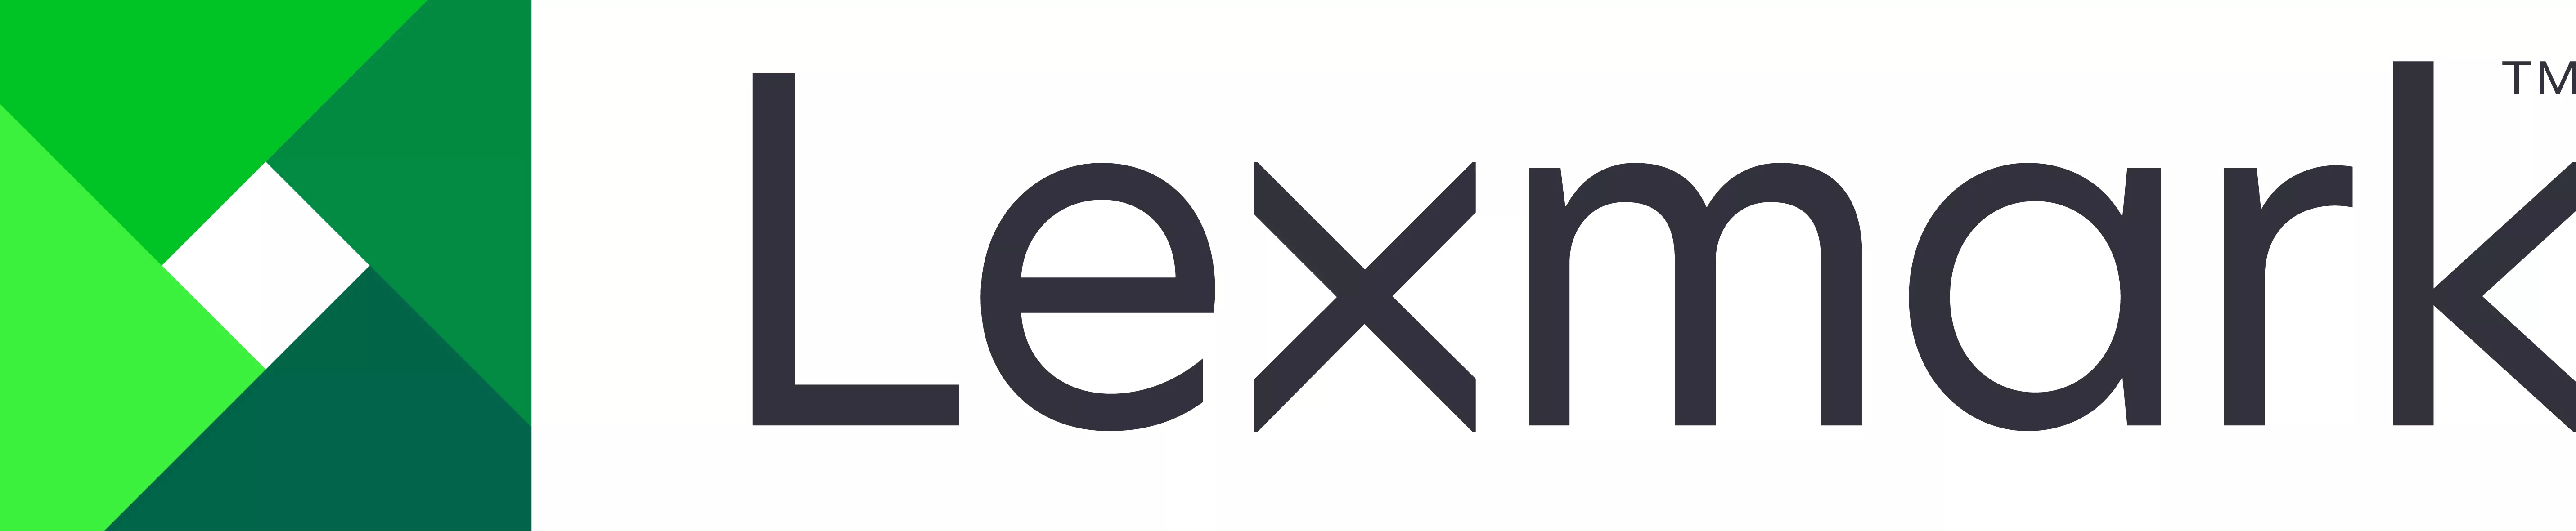 Vente Services et support pour imprimante LEXMARK CX725 Service sur site de 4 ans au total (1+3